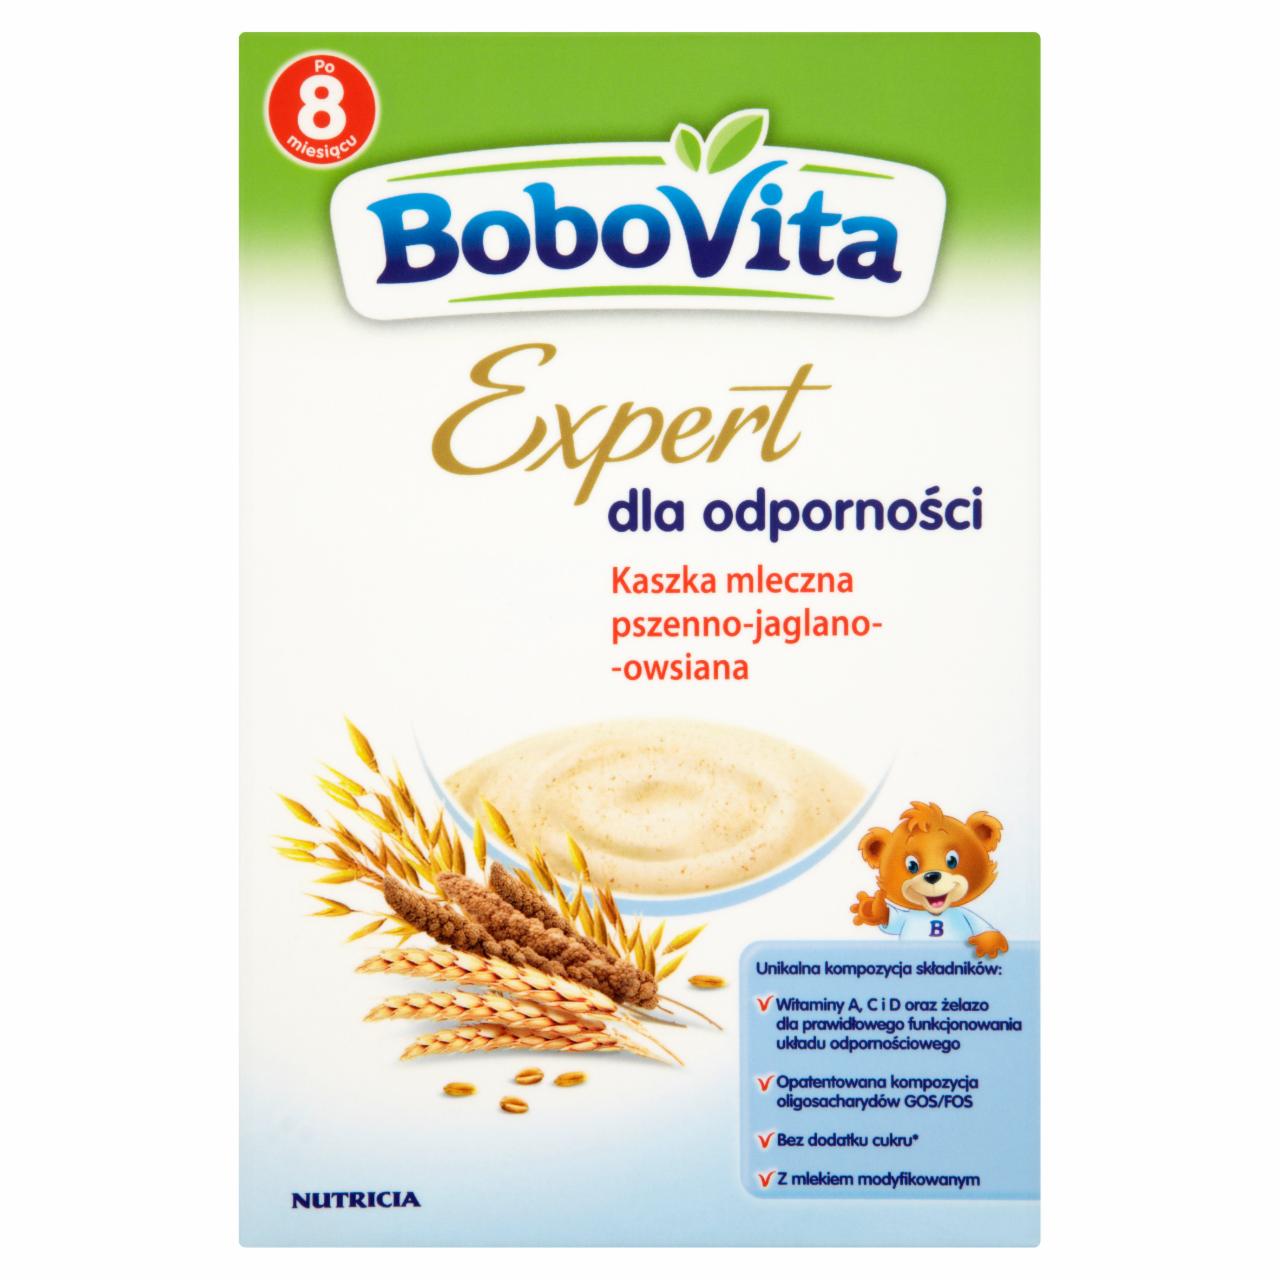 Zdjęcia - BoboVita Expert dla odporności Kaszka mleczna pszenno-jaglano-owsiana po 8 miesiącu 250 g